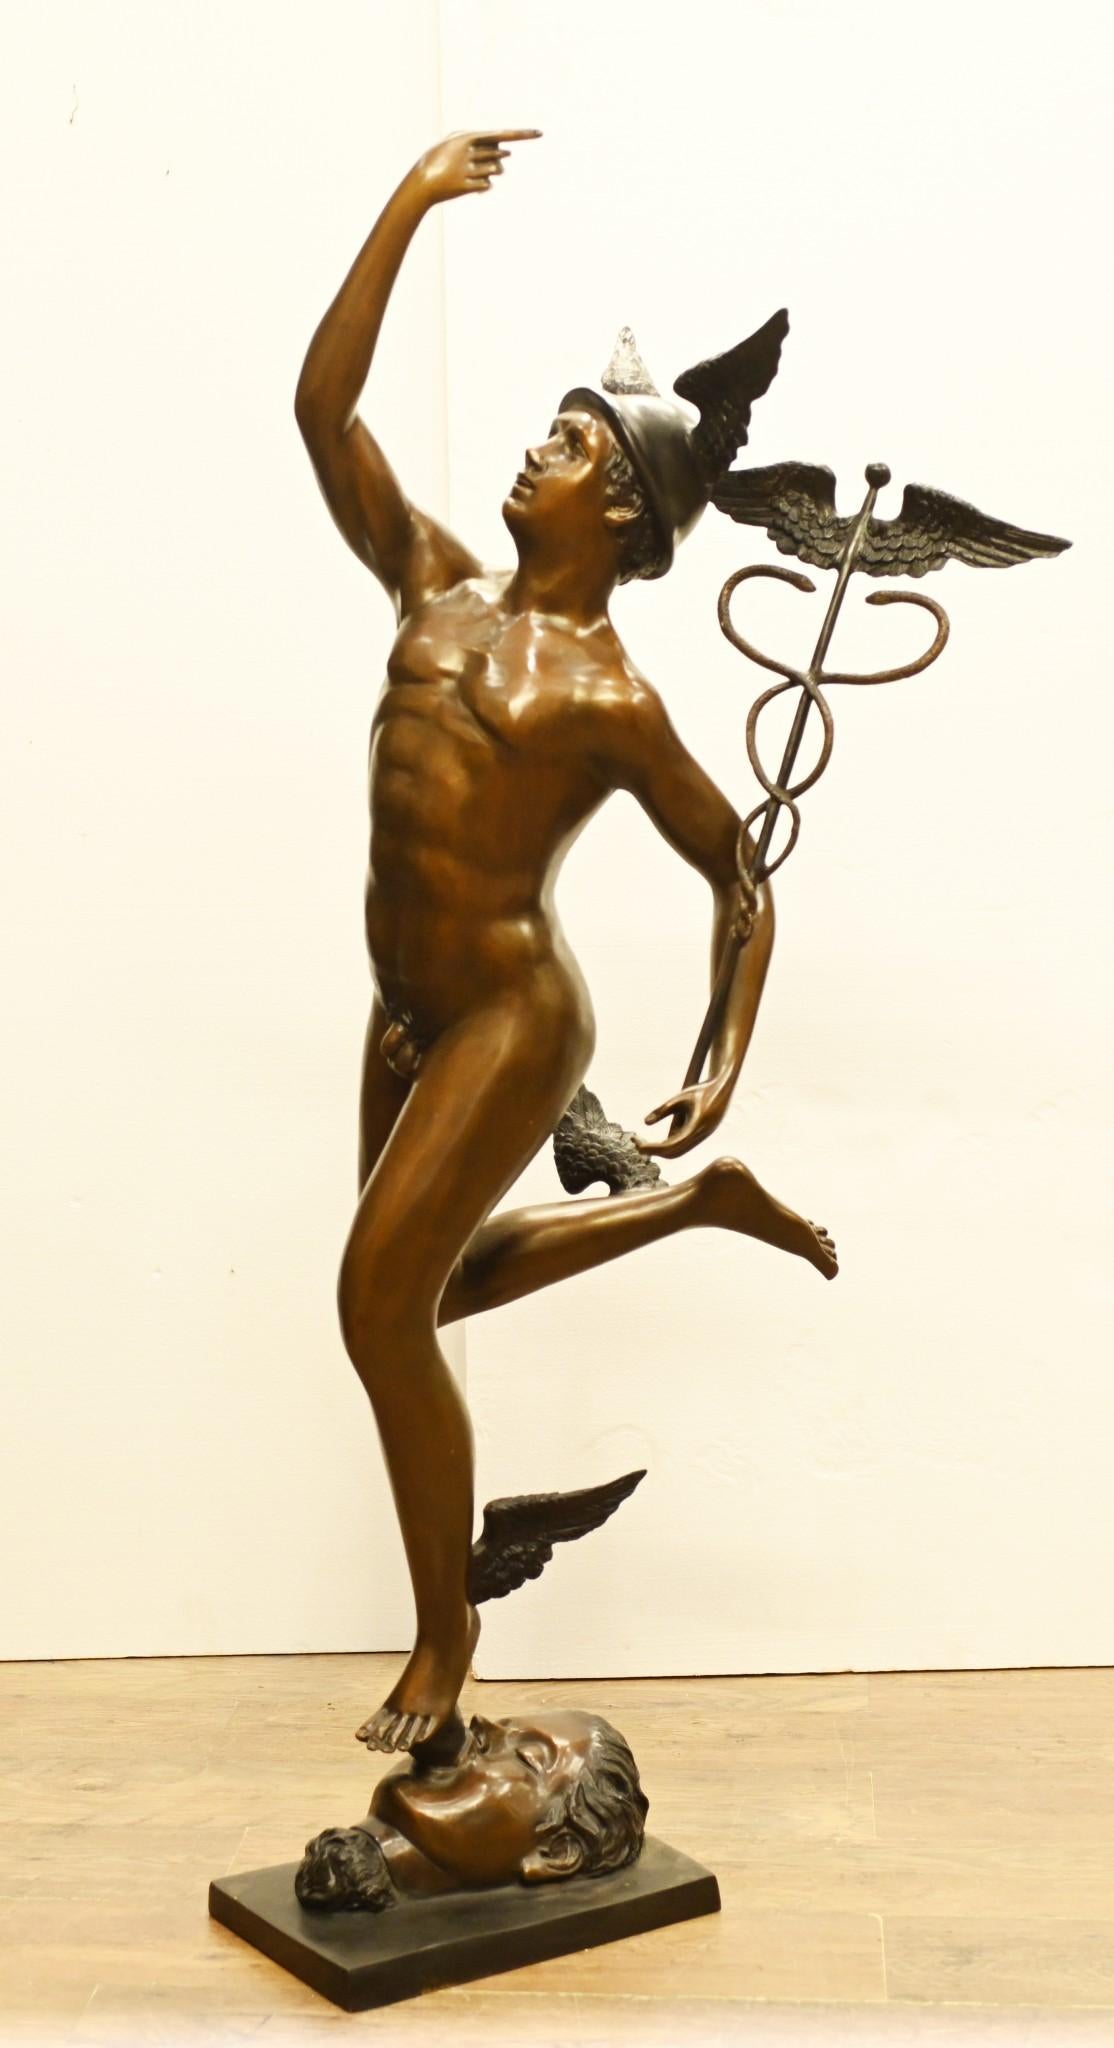 Unglaubliche riesige Bronzestatue der berühmten Merkur-Statue
Die Originalversion stammt von dem italienischen Künstler Giambologna
Diese Version ist über zwei Meter groß - 164 CM
Merkur war in der römischen Mythologie der Bote der Götter, daher